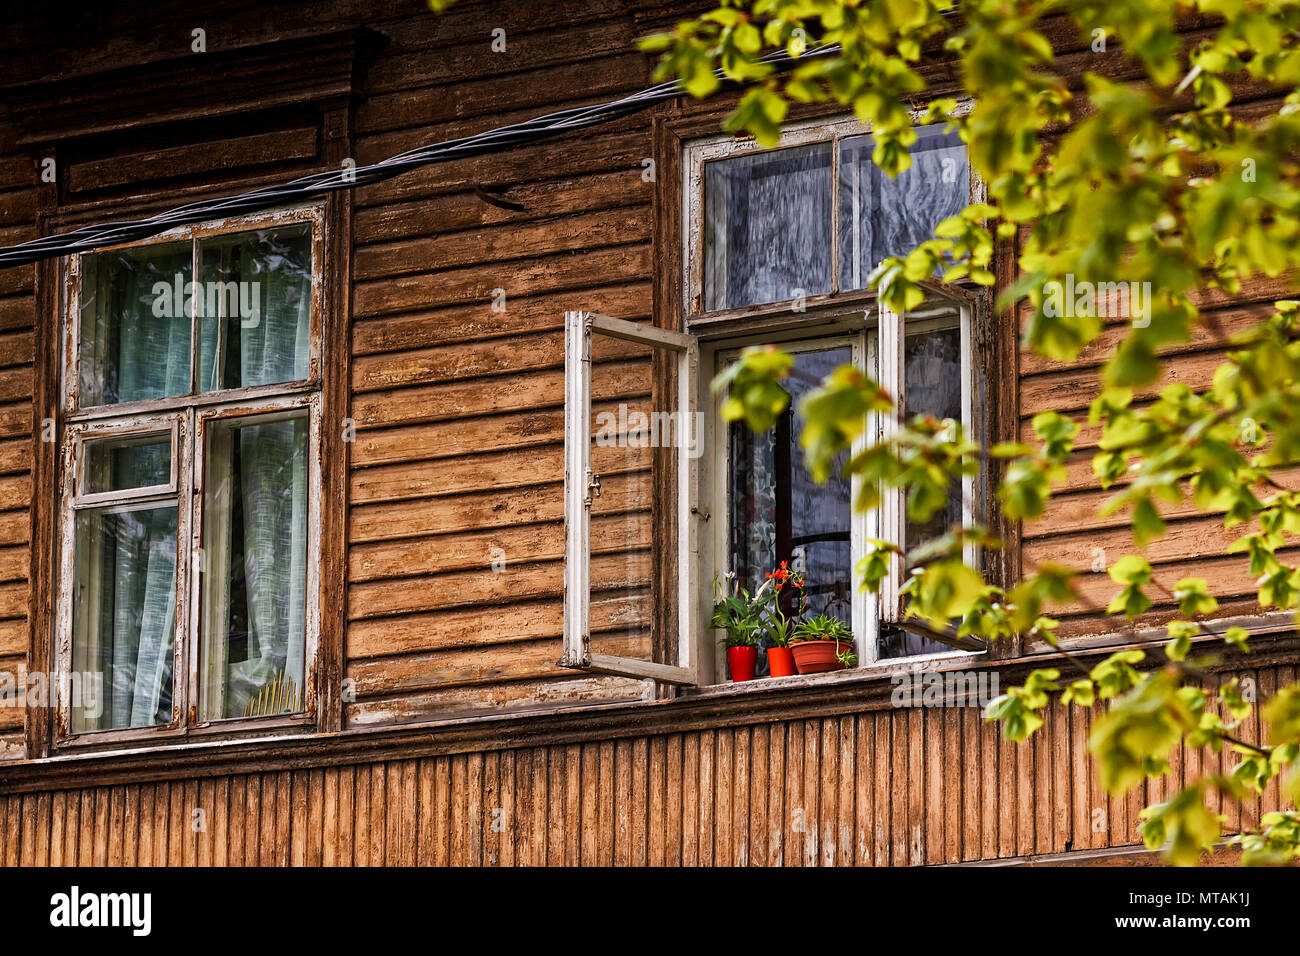 Drei rote Blumentöpfe stehen auf einem offenen Fenster eines alten Holzhaus.  Das Haus ist in Tallinn, Estland Stockfotografie - Alamy